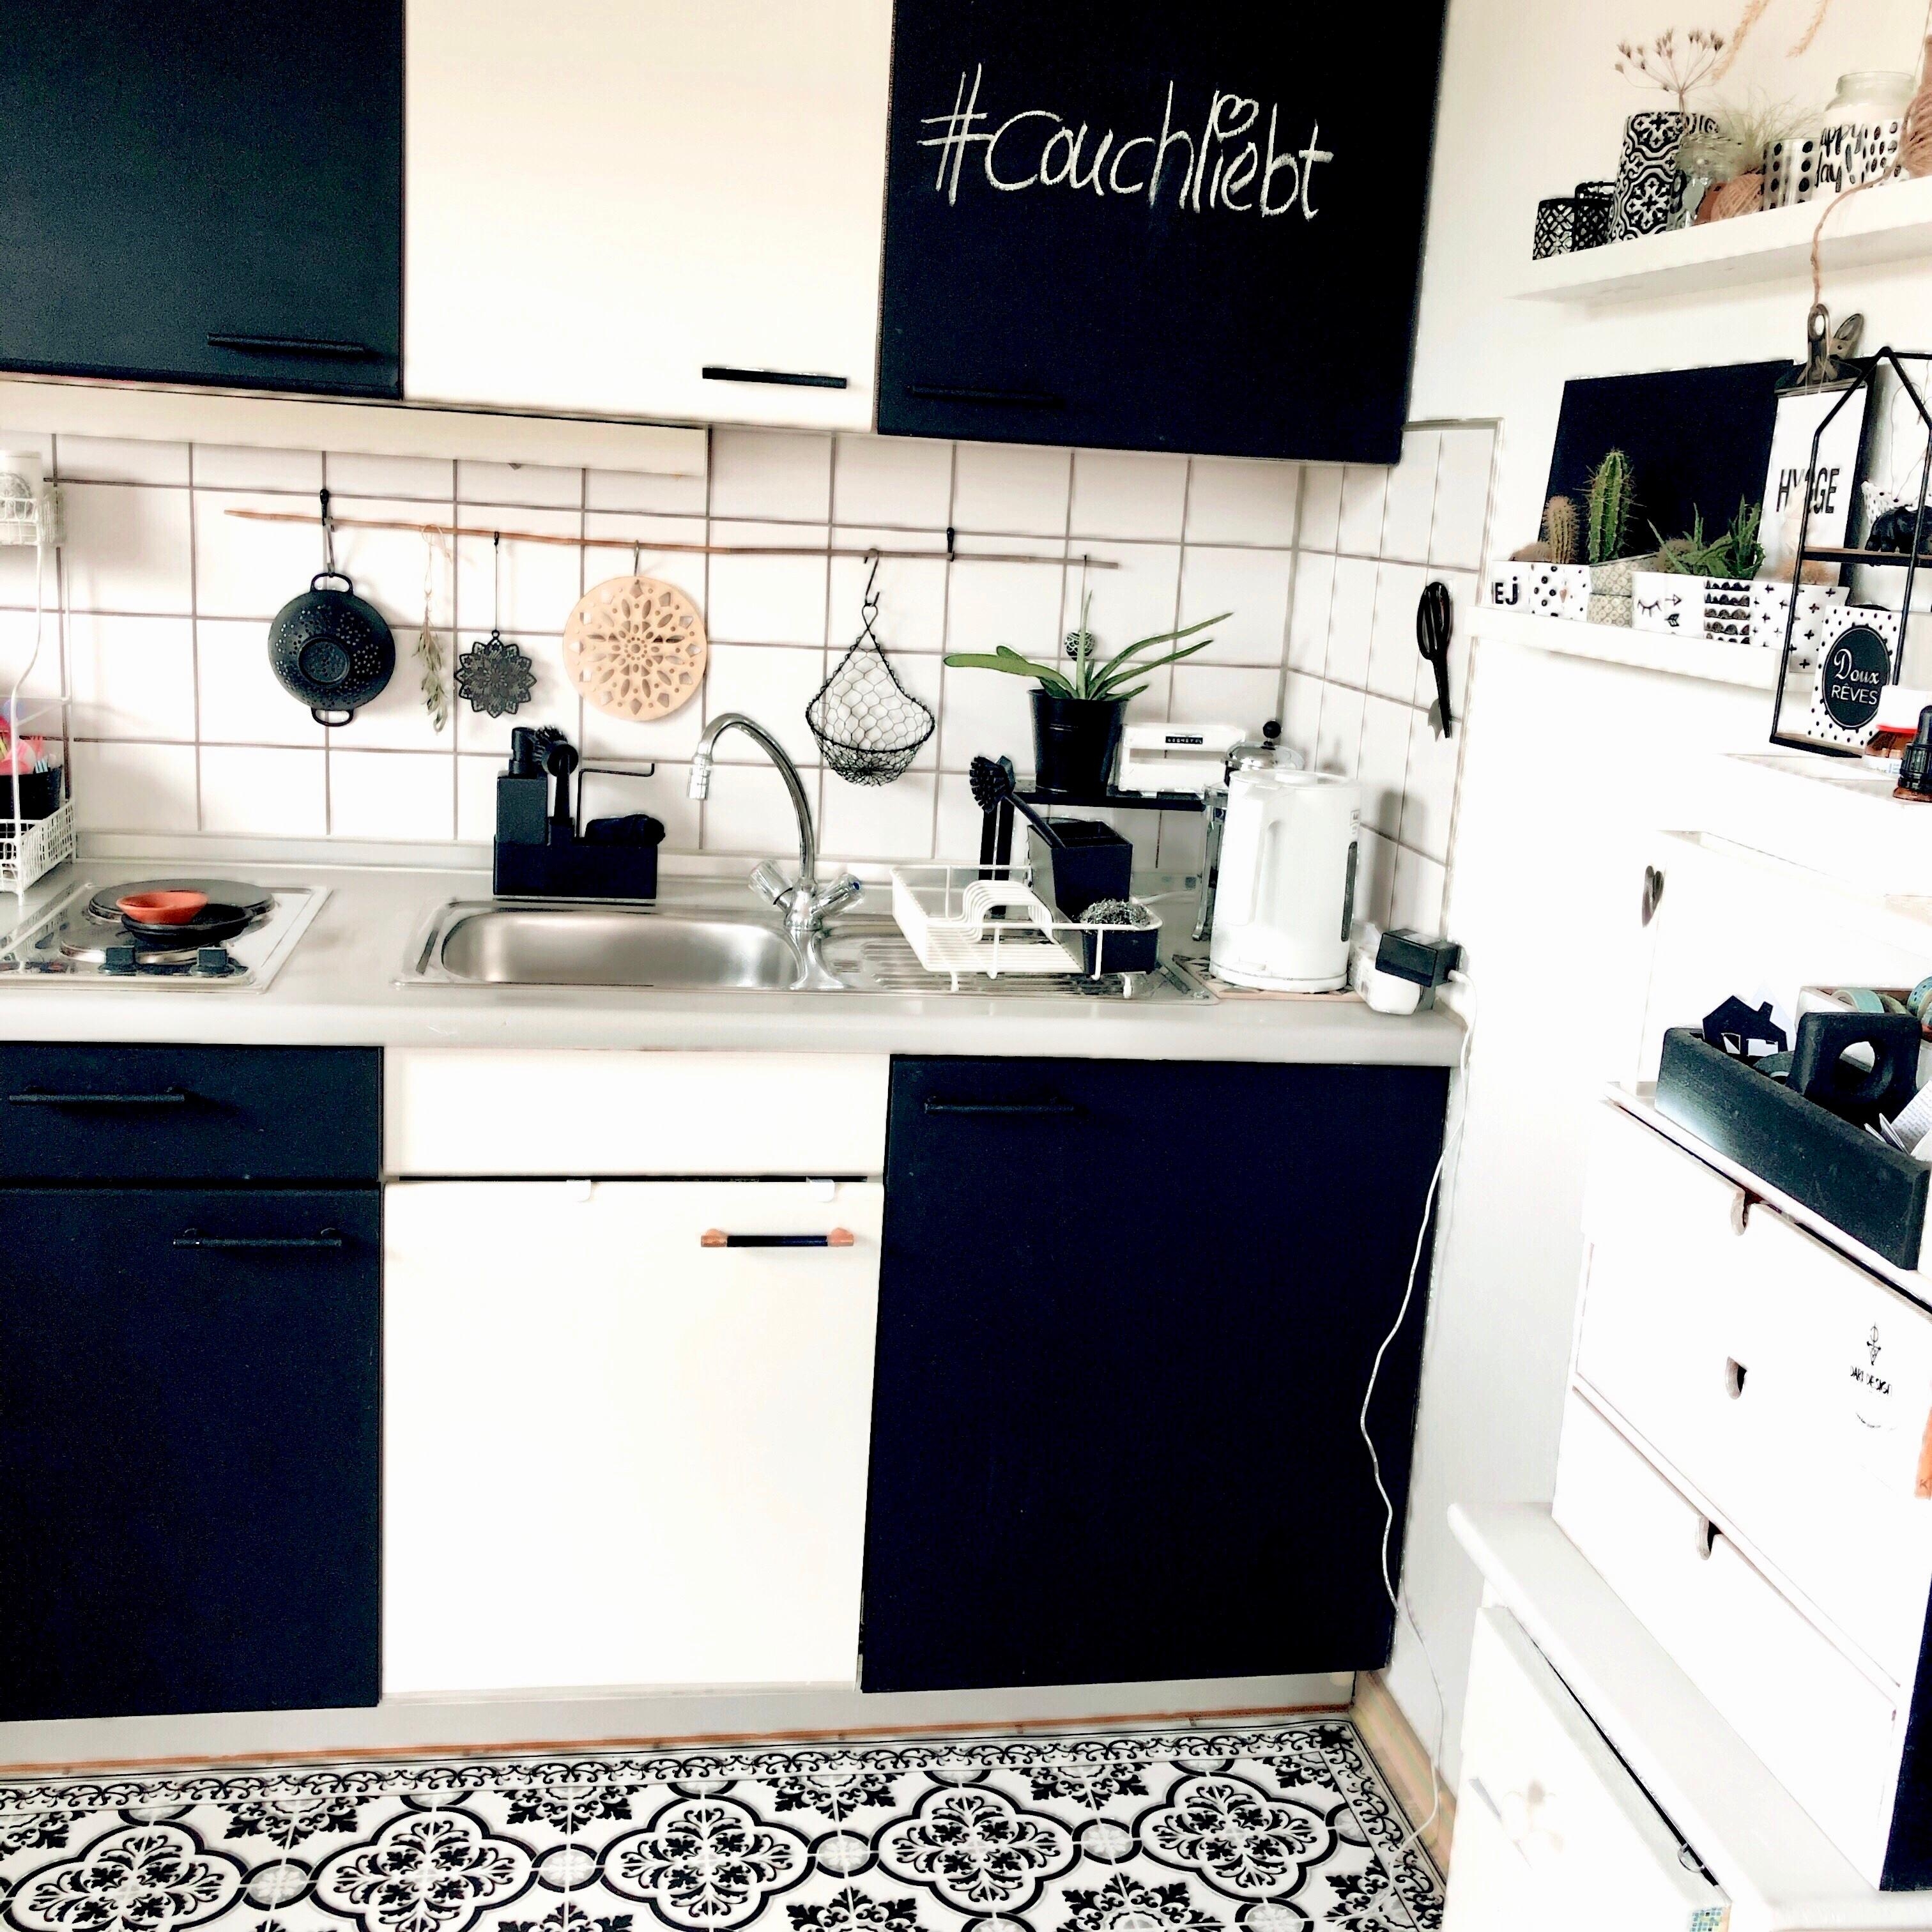 #küchenliebe #tafelfarbe #diy #couchliebt #boho #skandi #nordic #kleinewohnung #tinyhome